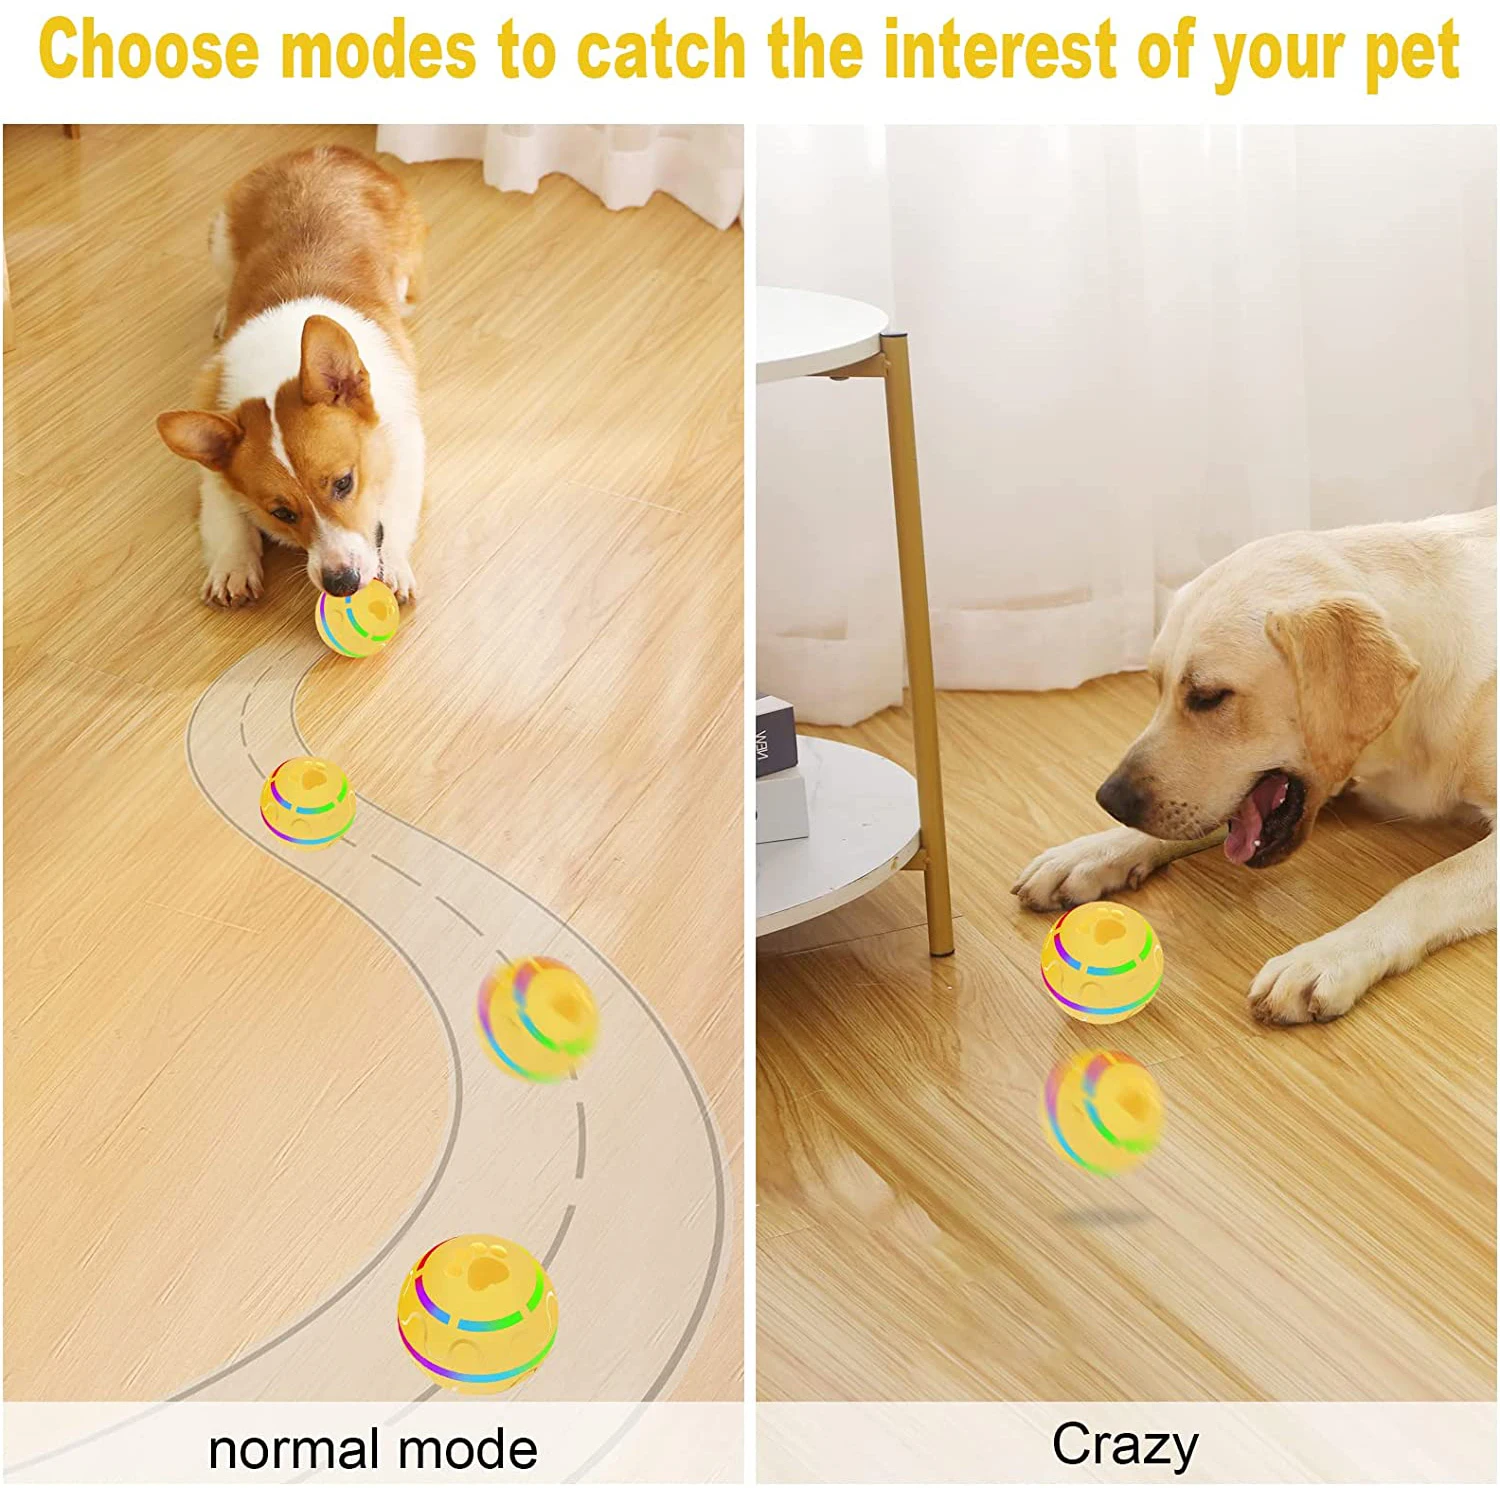 Smart Dog Toys Automatic Rolling Ball giocattoli elettrici per cani  interattivi per l'addestramento dei cani giocattoli per cuccioli  automoventi accessori per animali domestici - AliExpress